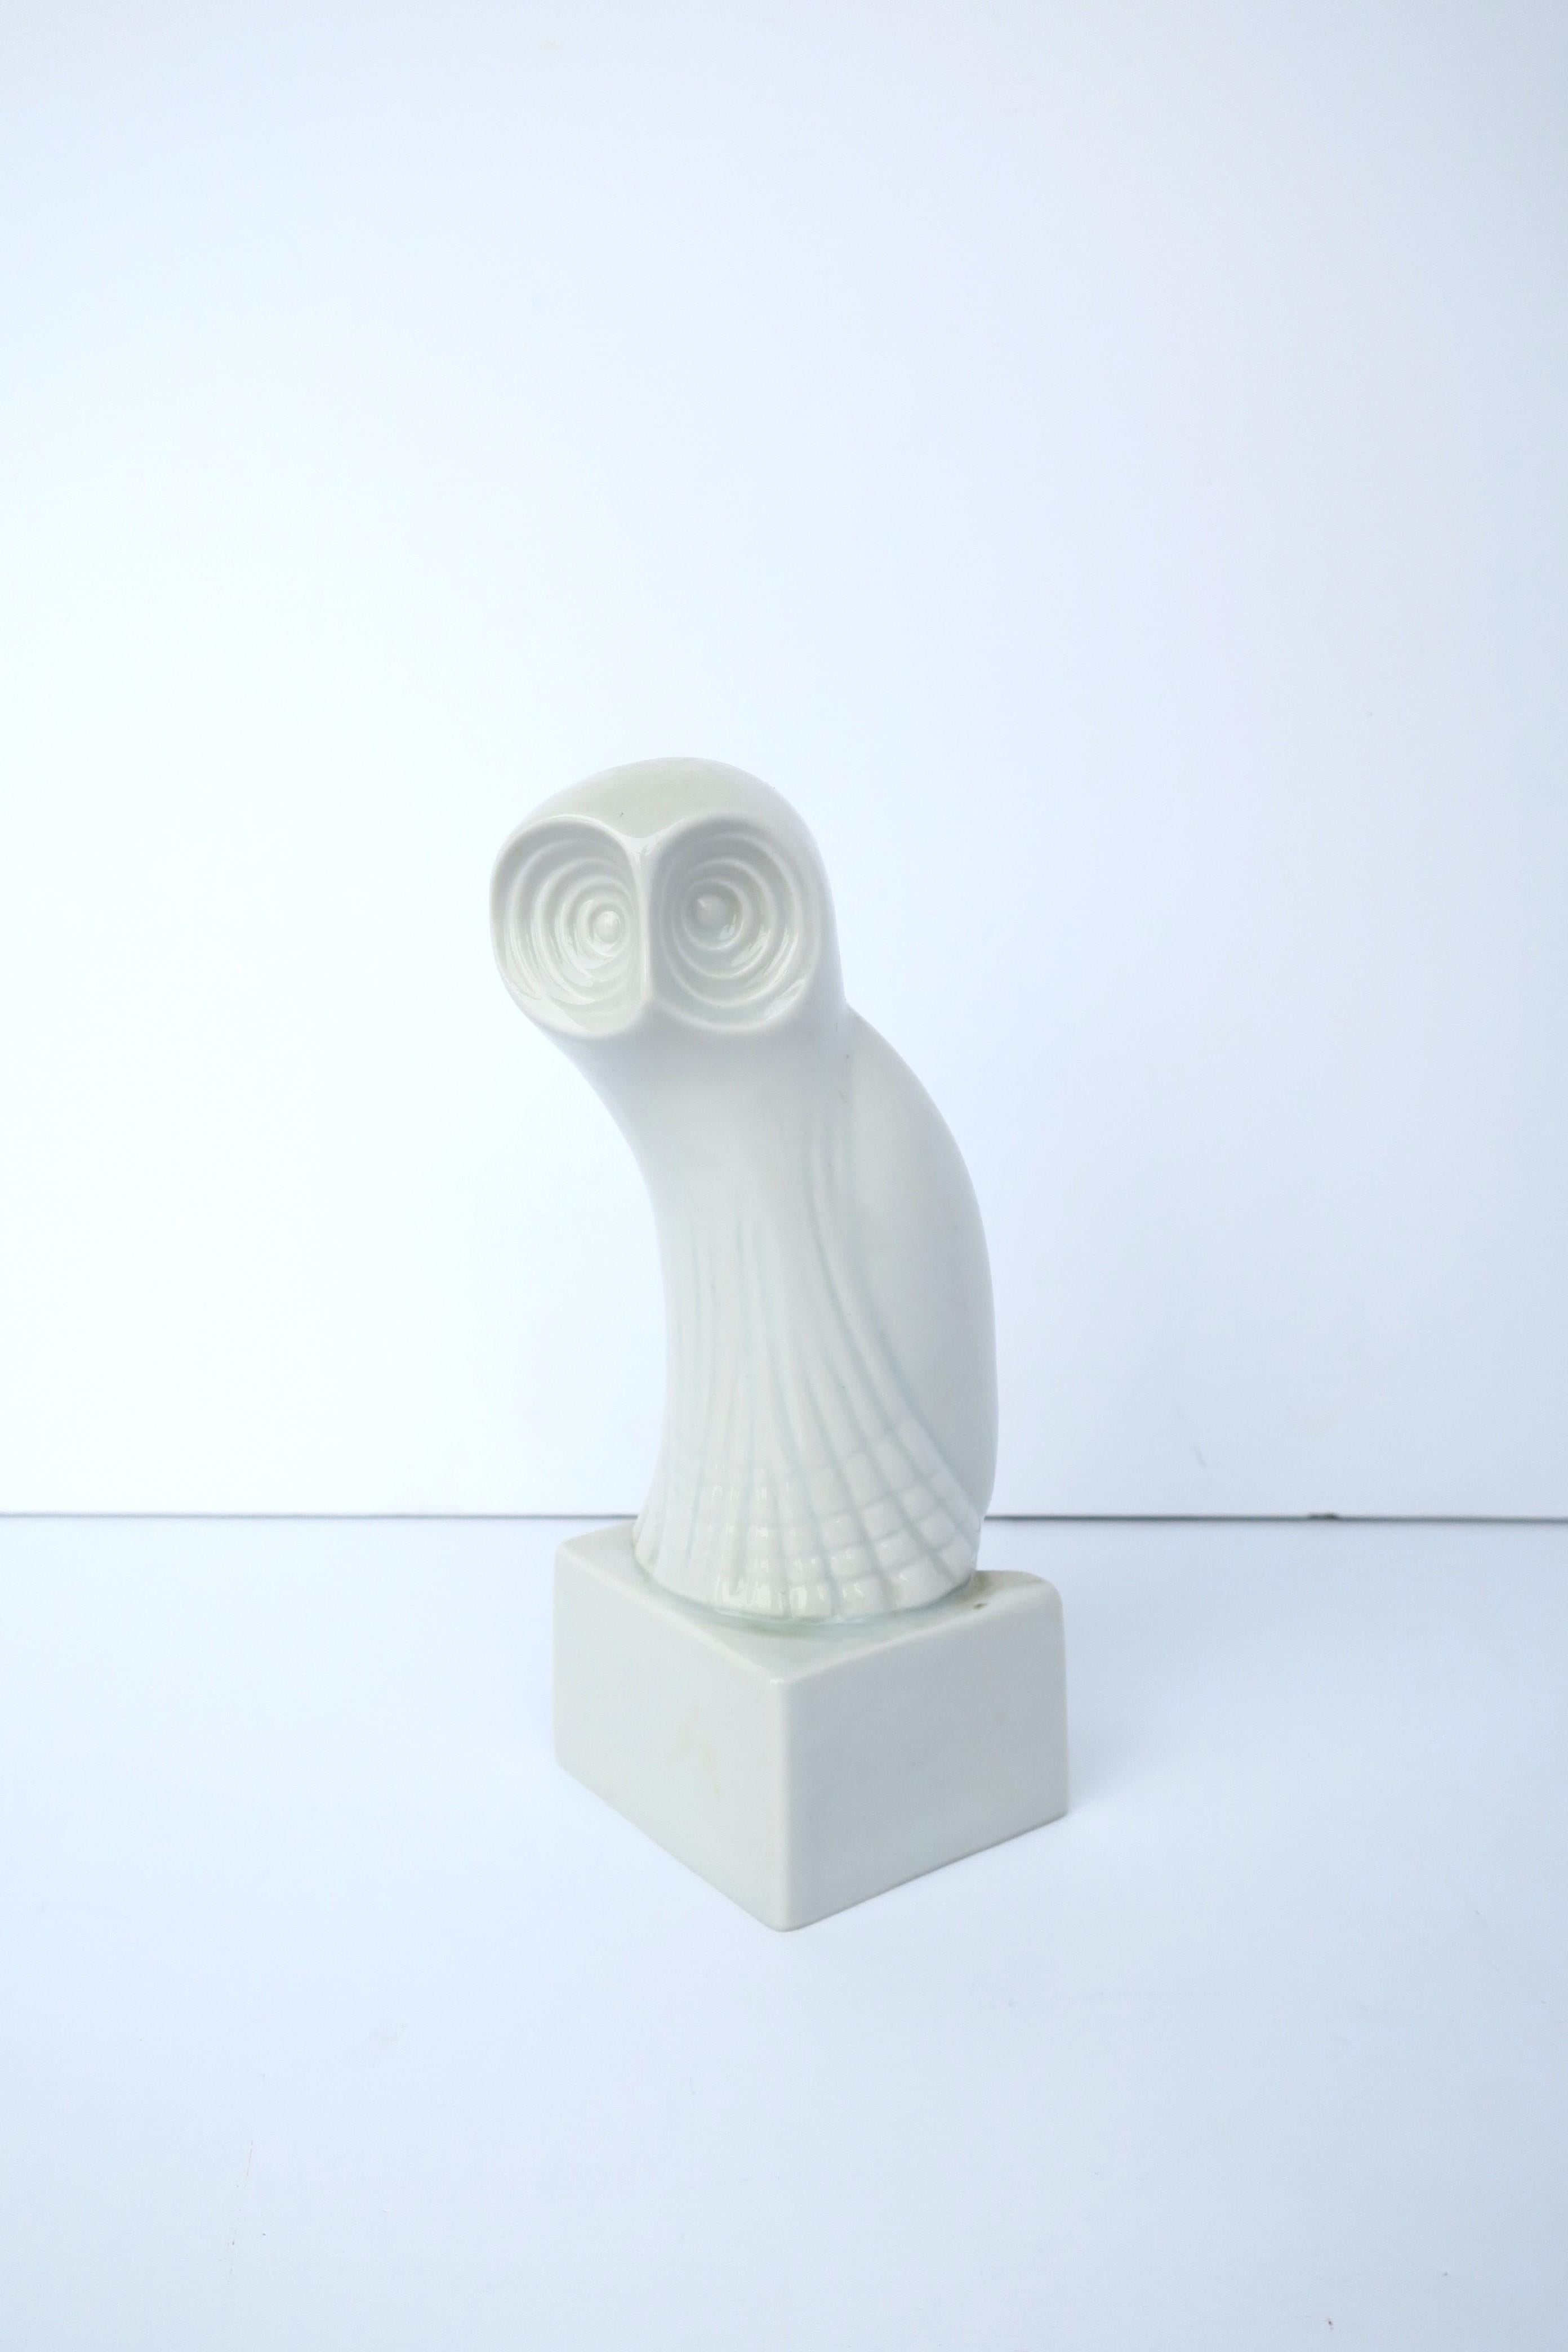 Oiseau hibou en porcelaine blanche, période moderne du milieu du siècle, par Royal Dux Bohemia, vers le milieu du 20e siècle, Tchécoslovaquie. Avec la marque du fabricant sur le dessous comme indiqué sur la dernière image. Une pièce idéale pour une